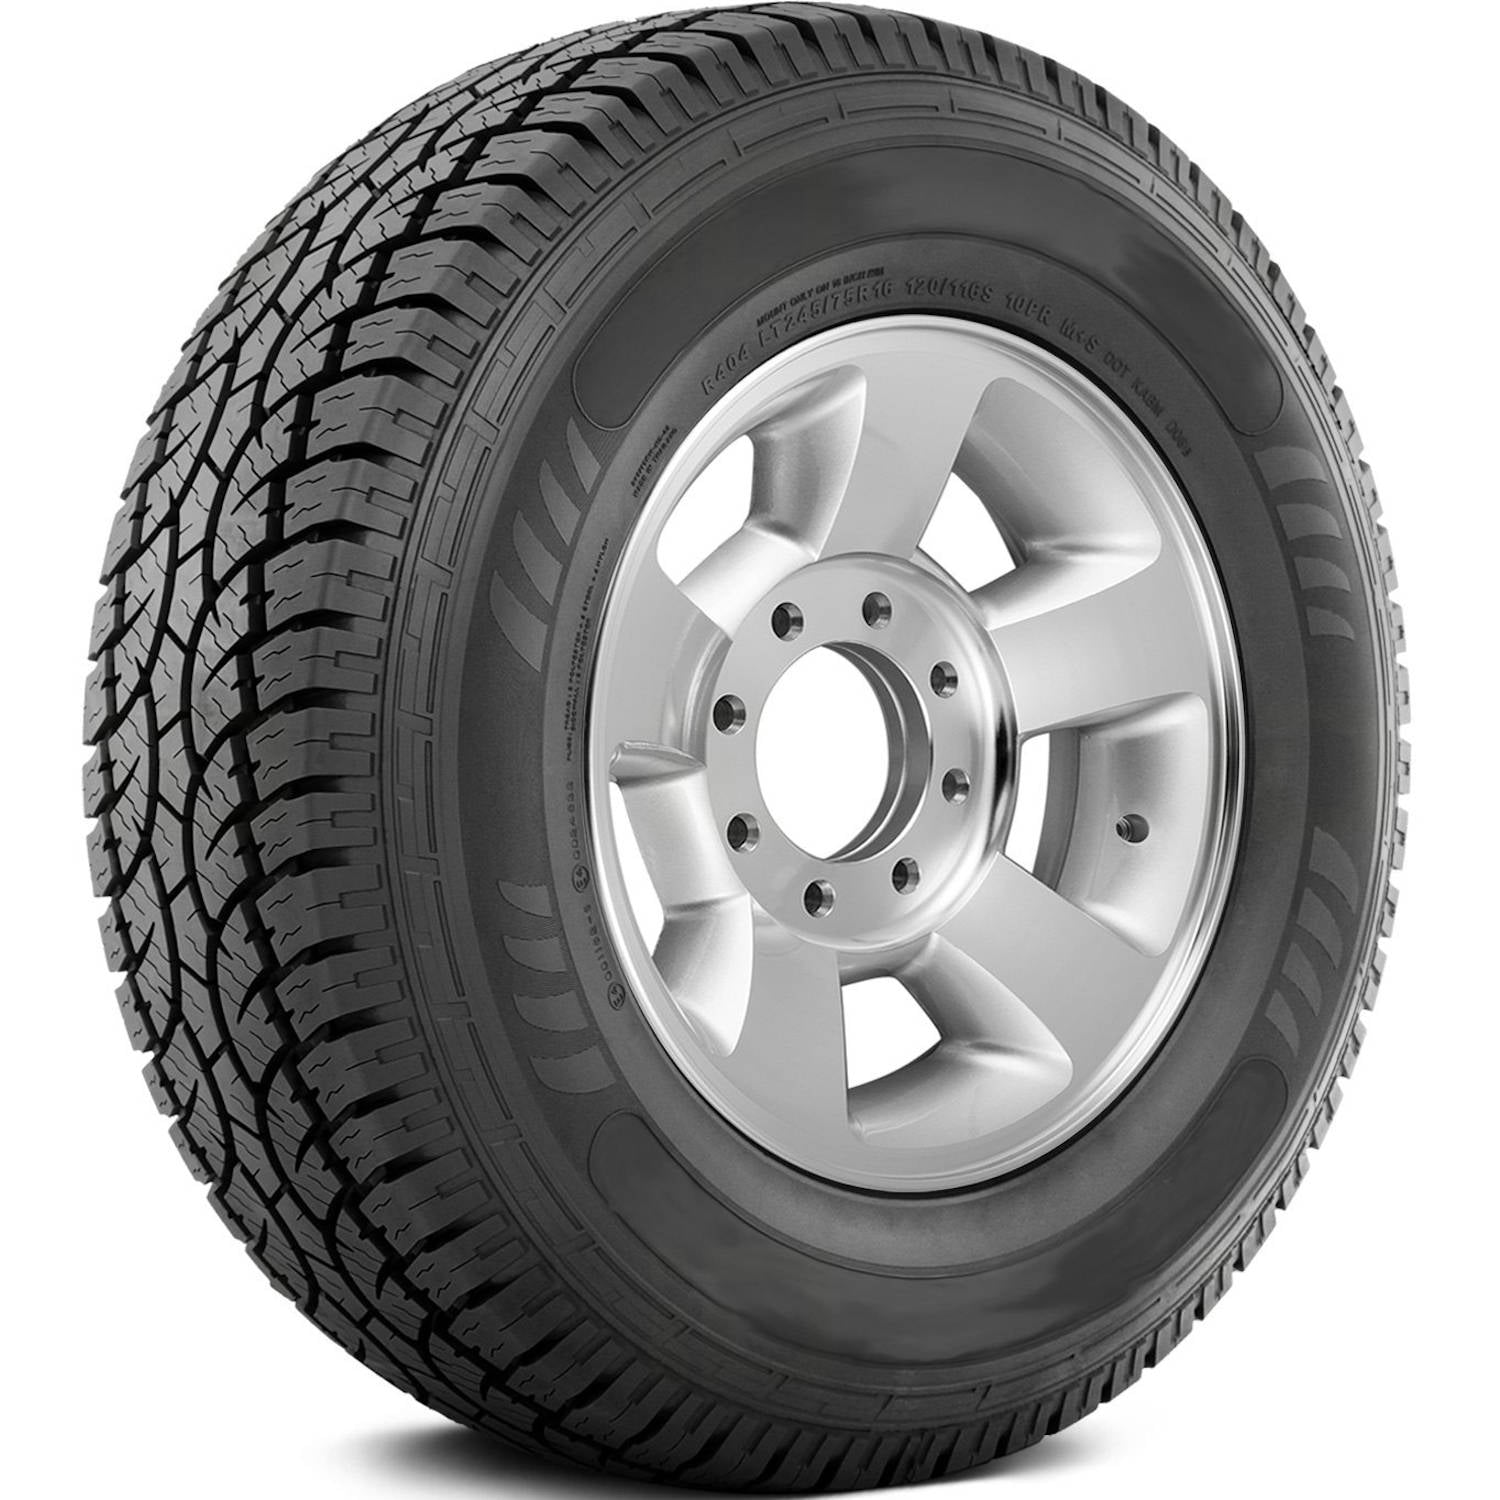 AMERICUS RUGGED ALL TERRAIN LT235/80R17 (31.8X9.3R 17) Tires